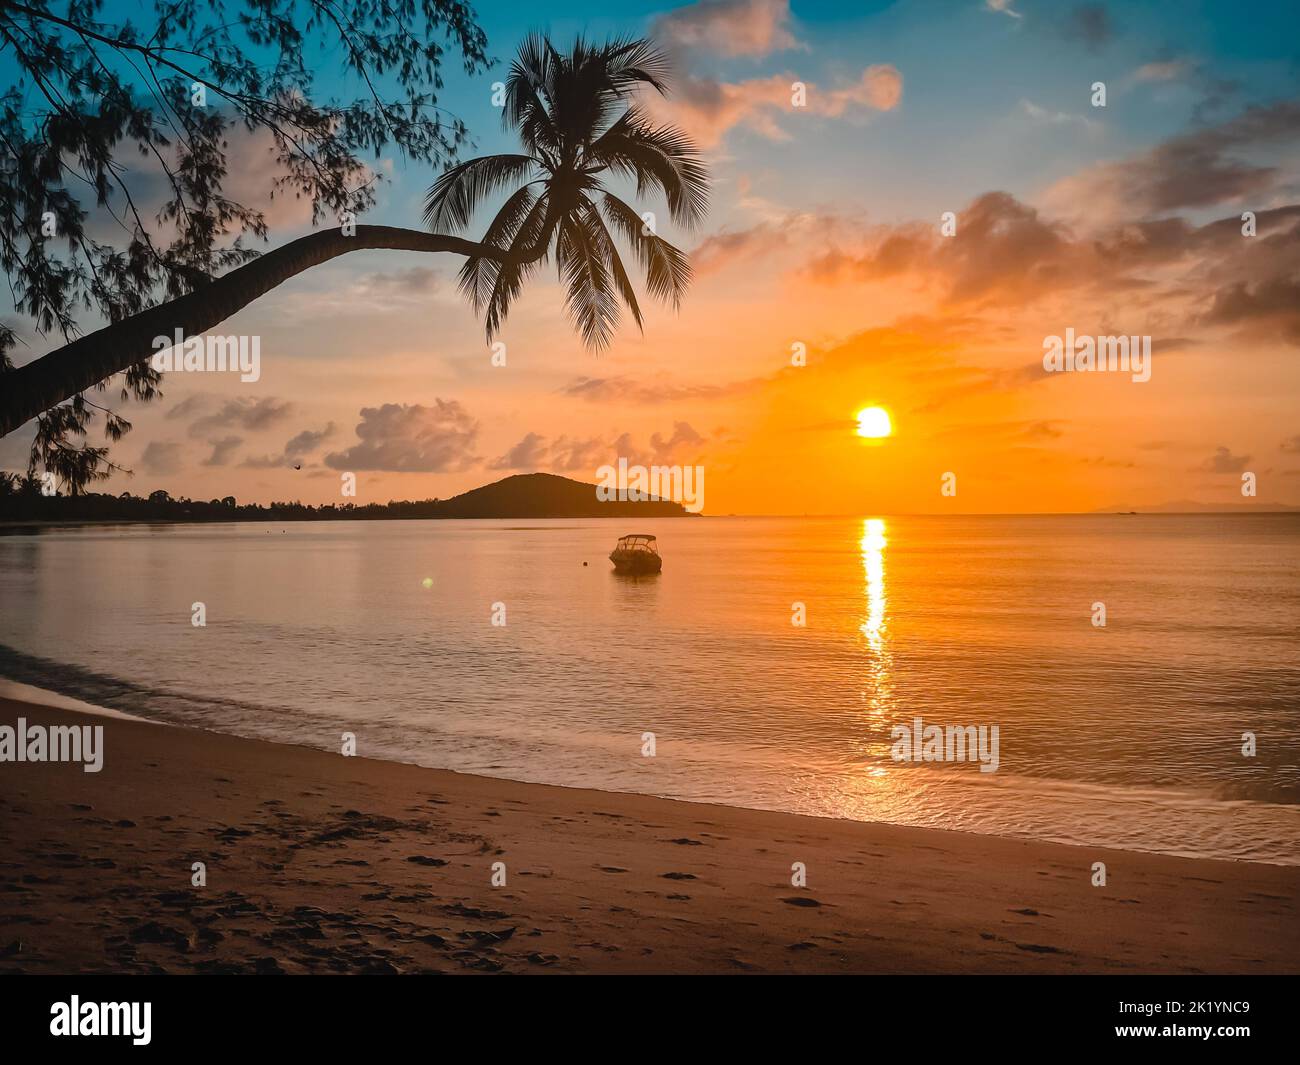 Strahlender tropischer Sonnenuntergang-Strand, ruhiges Meerwasser, Sandstrand, Silhouette des Fischerboots im orangefarbenen Sonnenlicht. Palme, Sonnenaufgang farbenfroher Hintergrund. Unglaubliche Insellandschaft. Resorturlaub, Reisekonzept Stockfoto